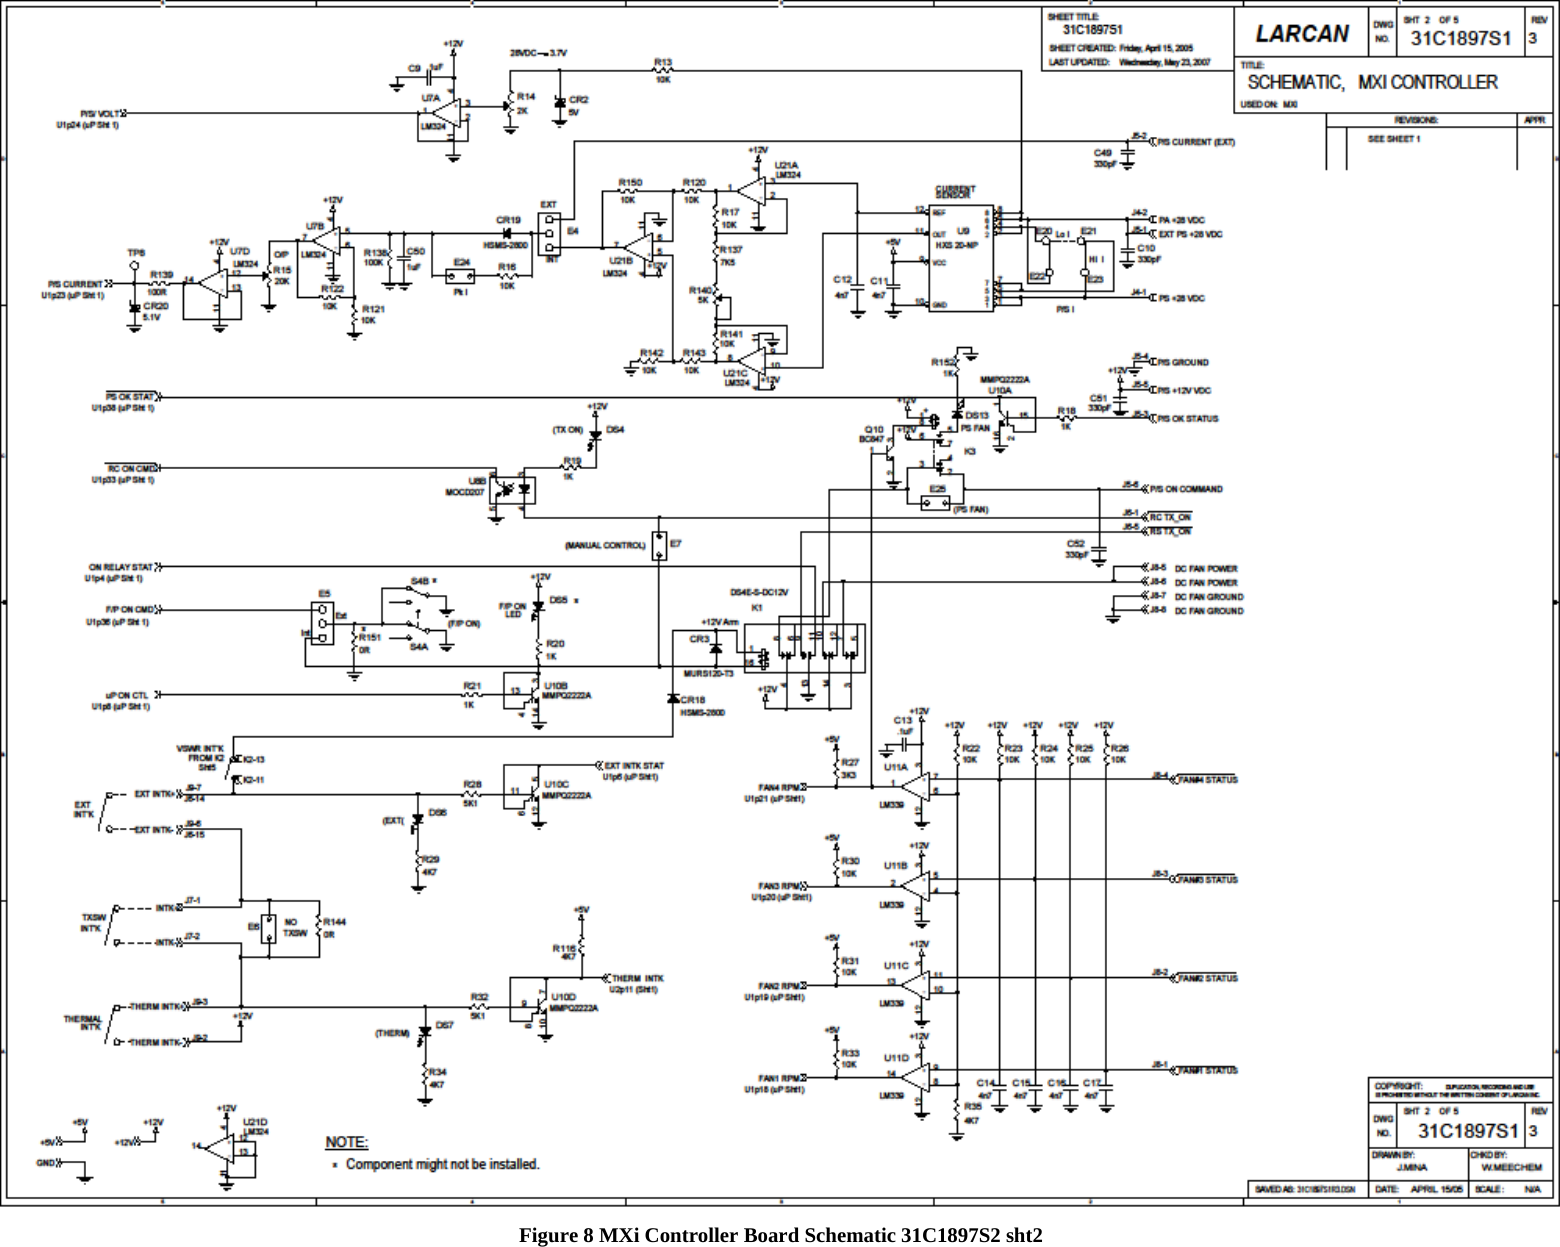   Figure 8 MXi Controller Board Schematic 31C1897S2 sht2   